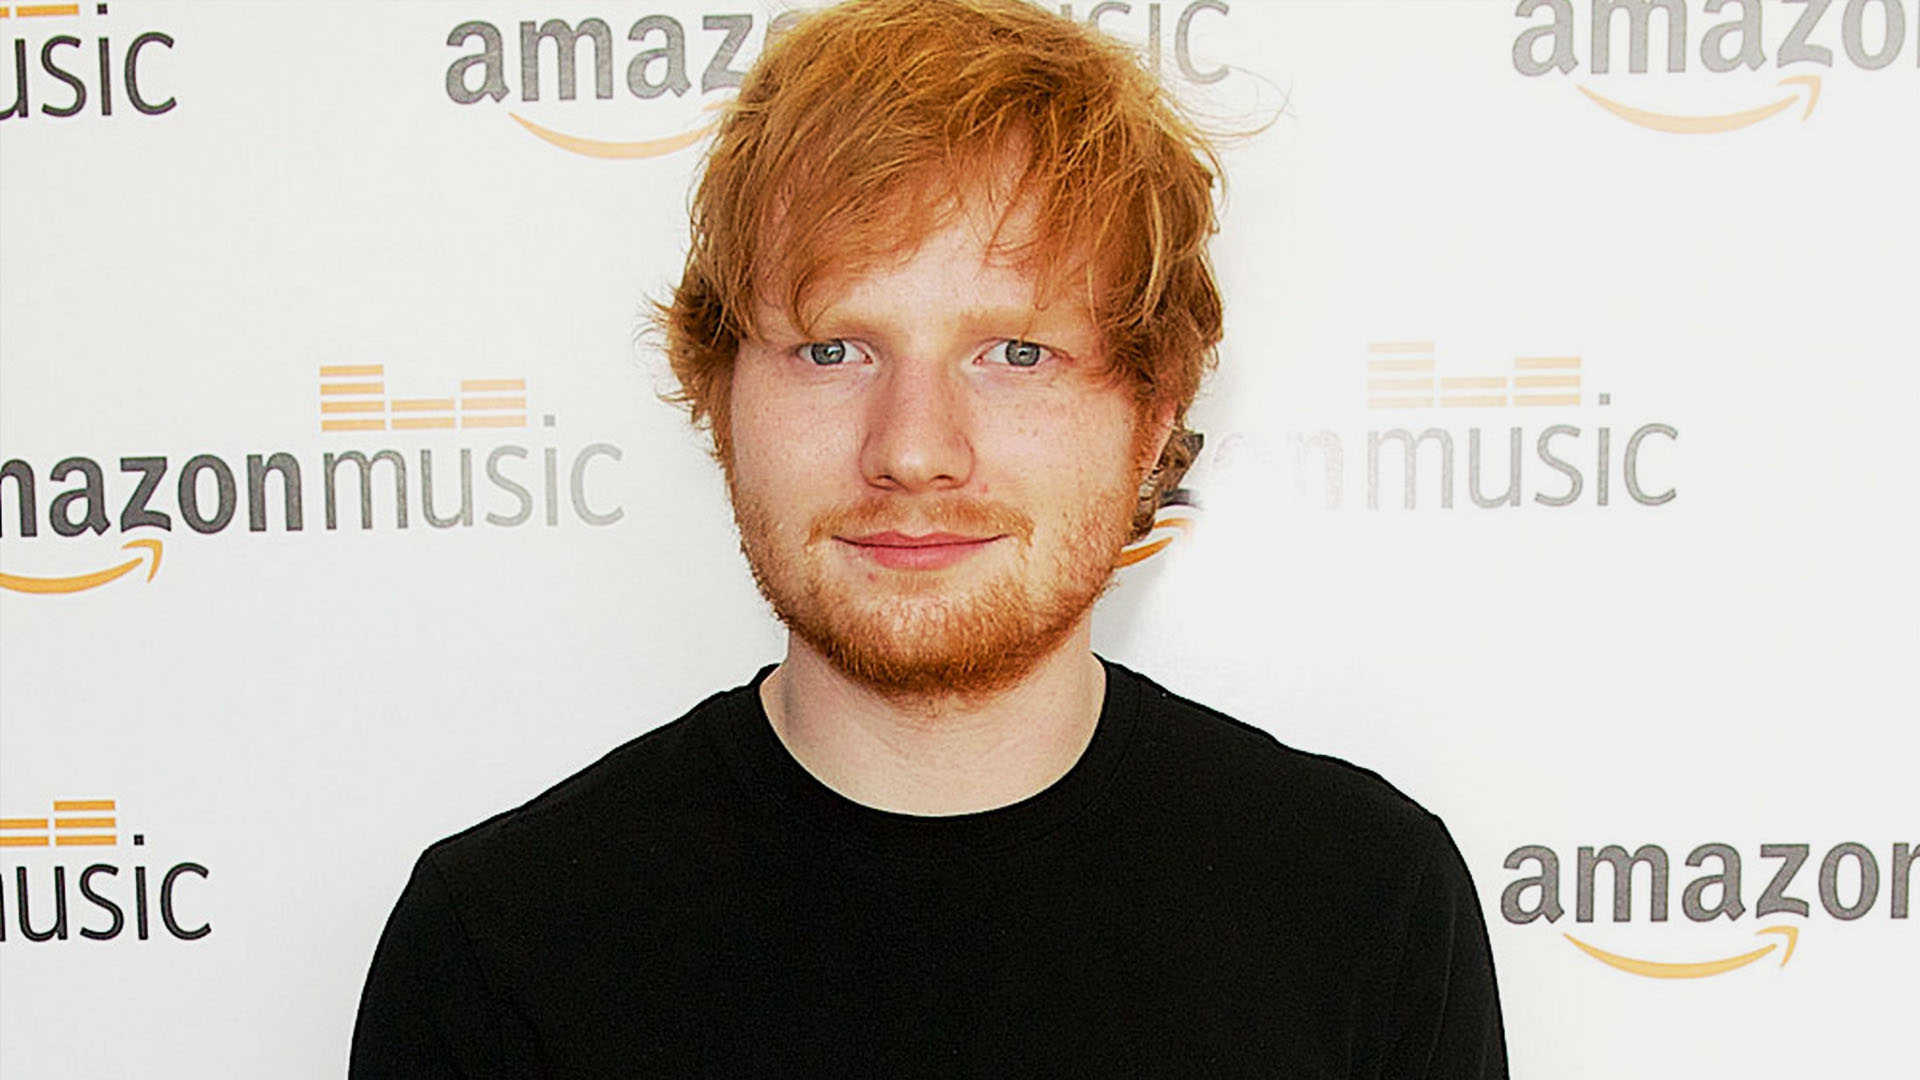 Ed Sheeran HD Wallpapers pack download free